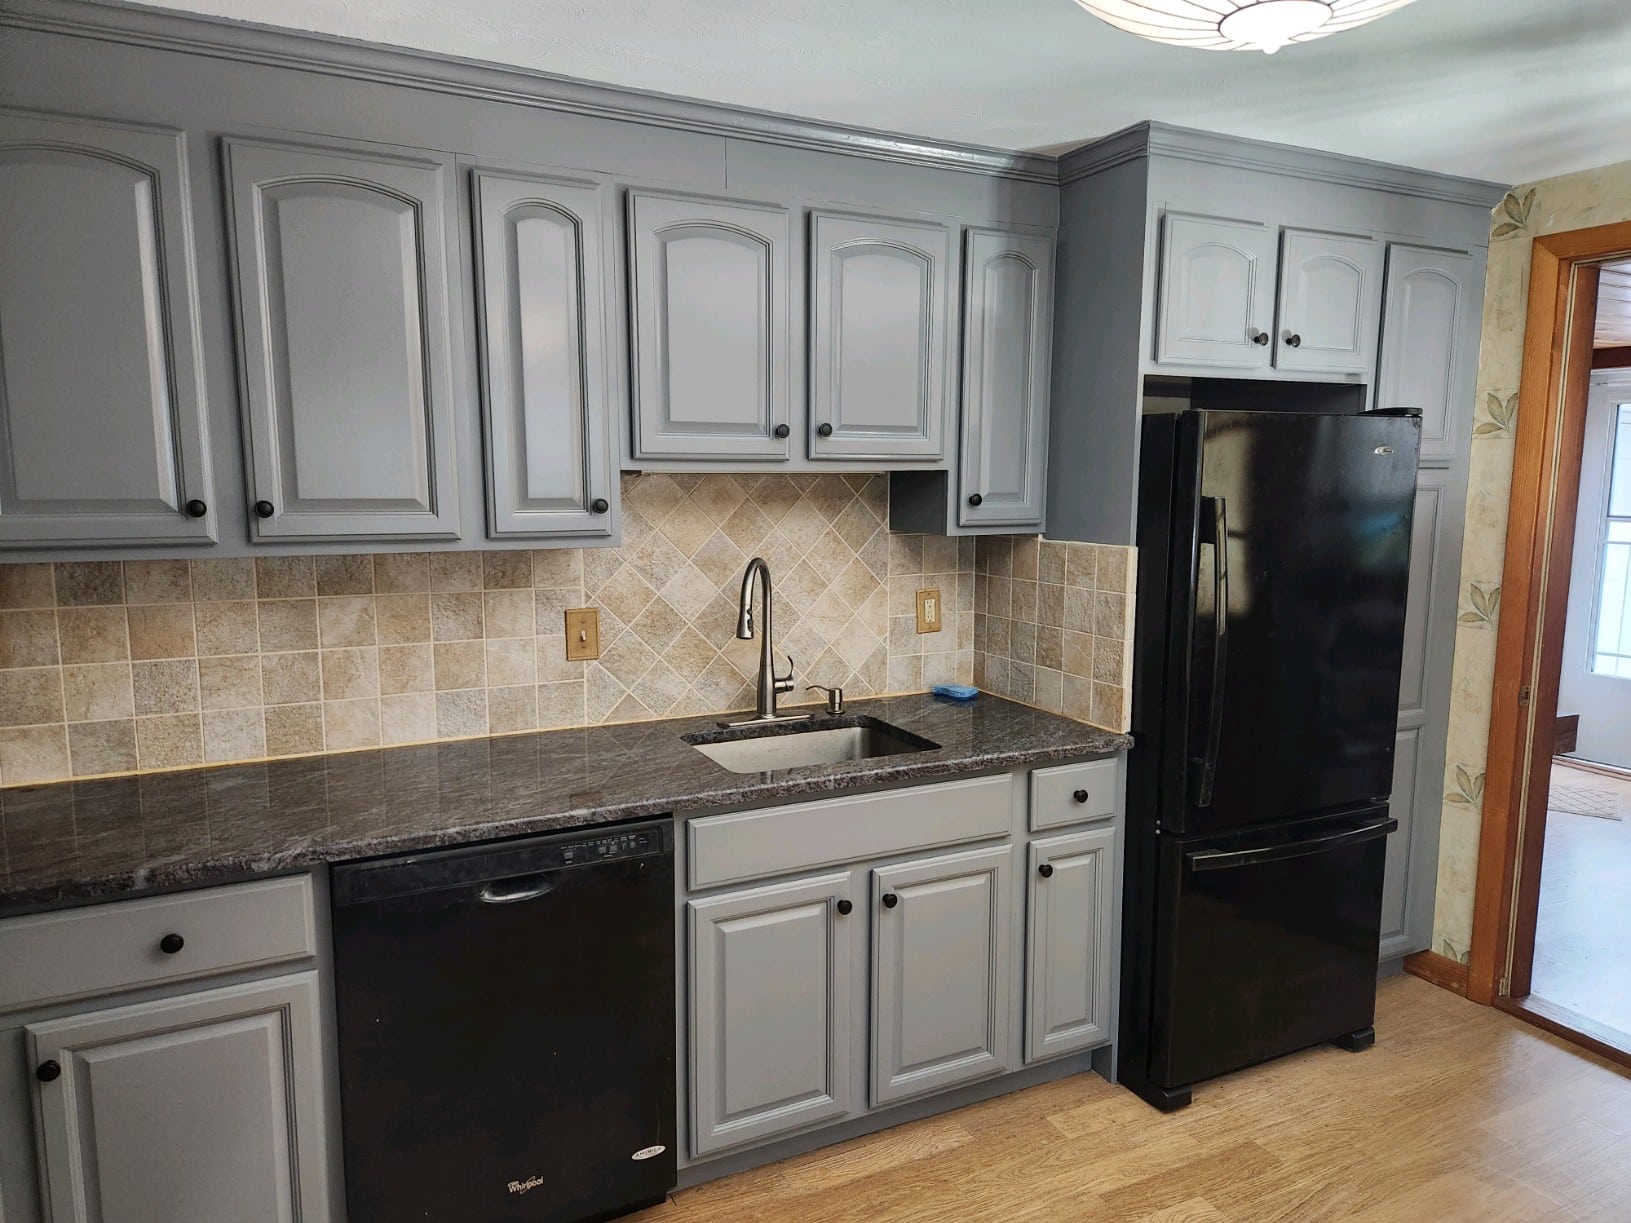 Home's kitchen painted dark grey